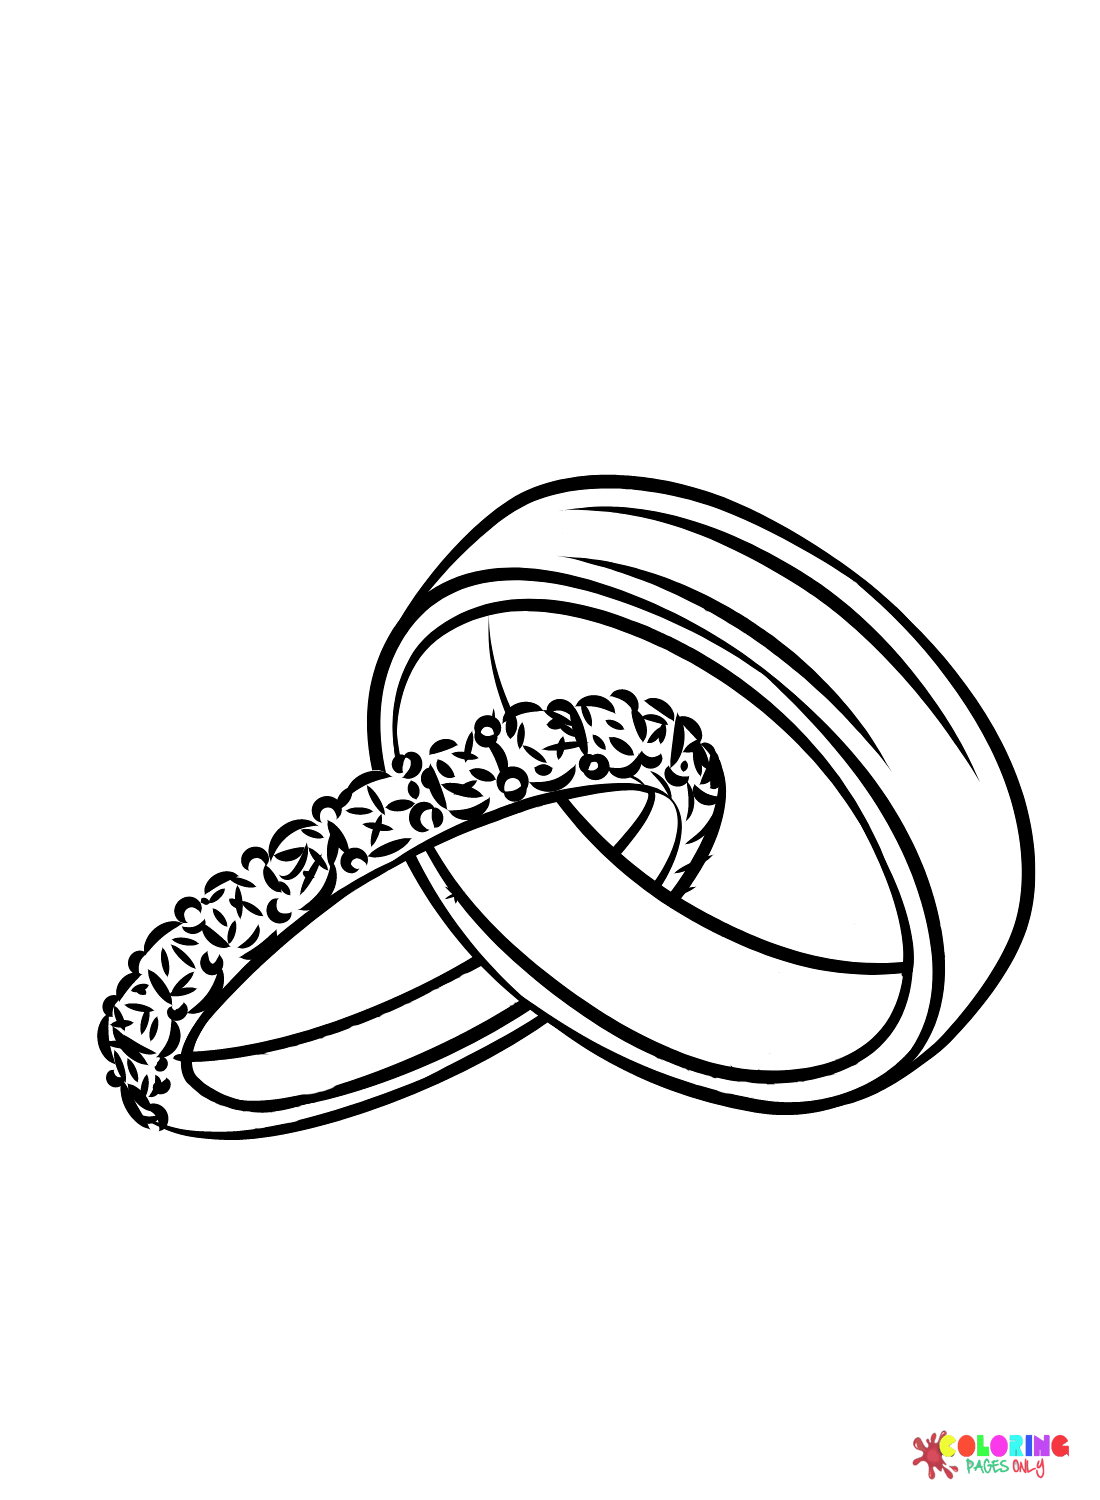 来自 Wedding Ring 的免费结婚戒指